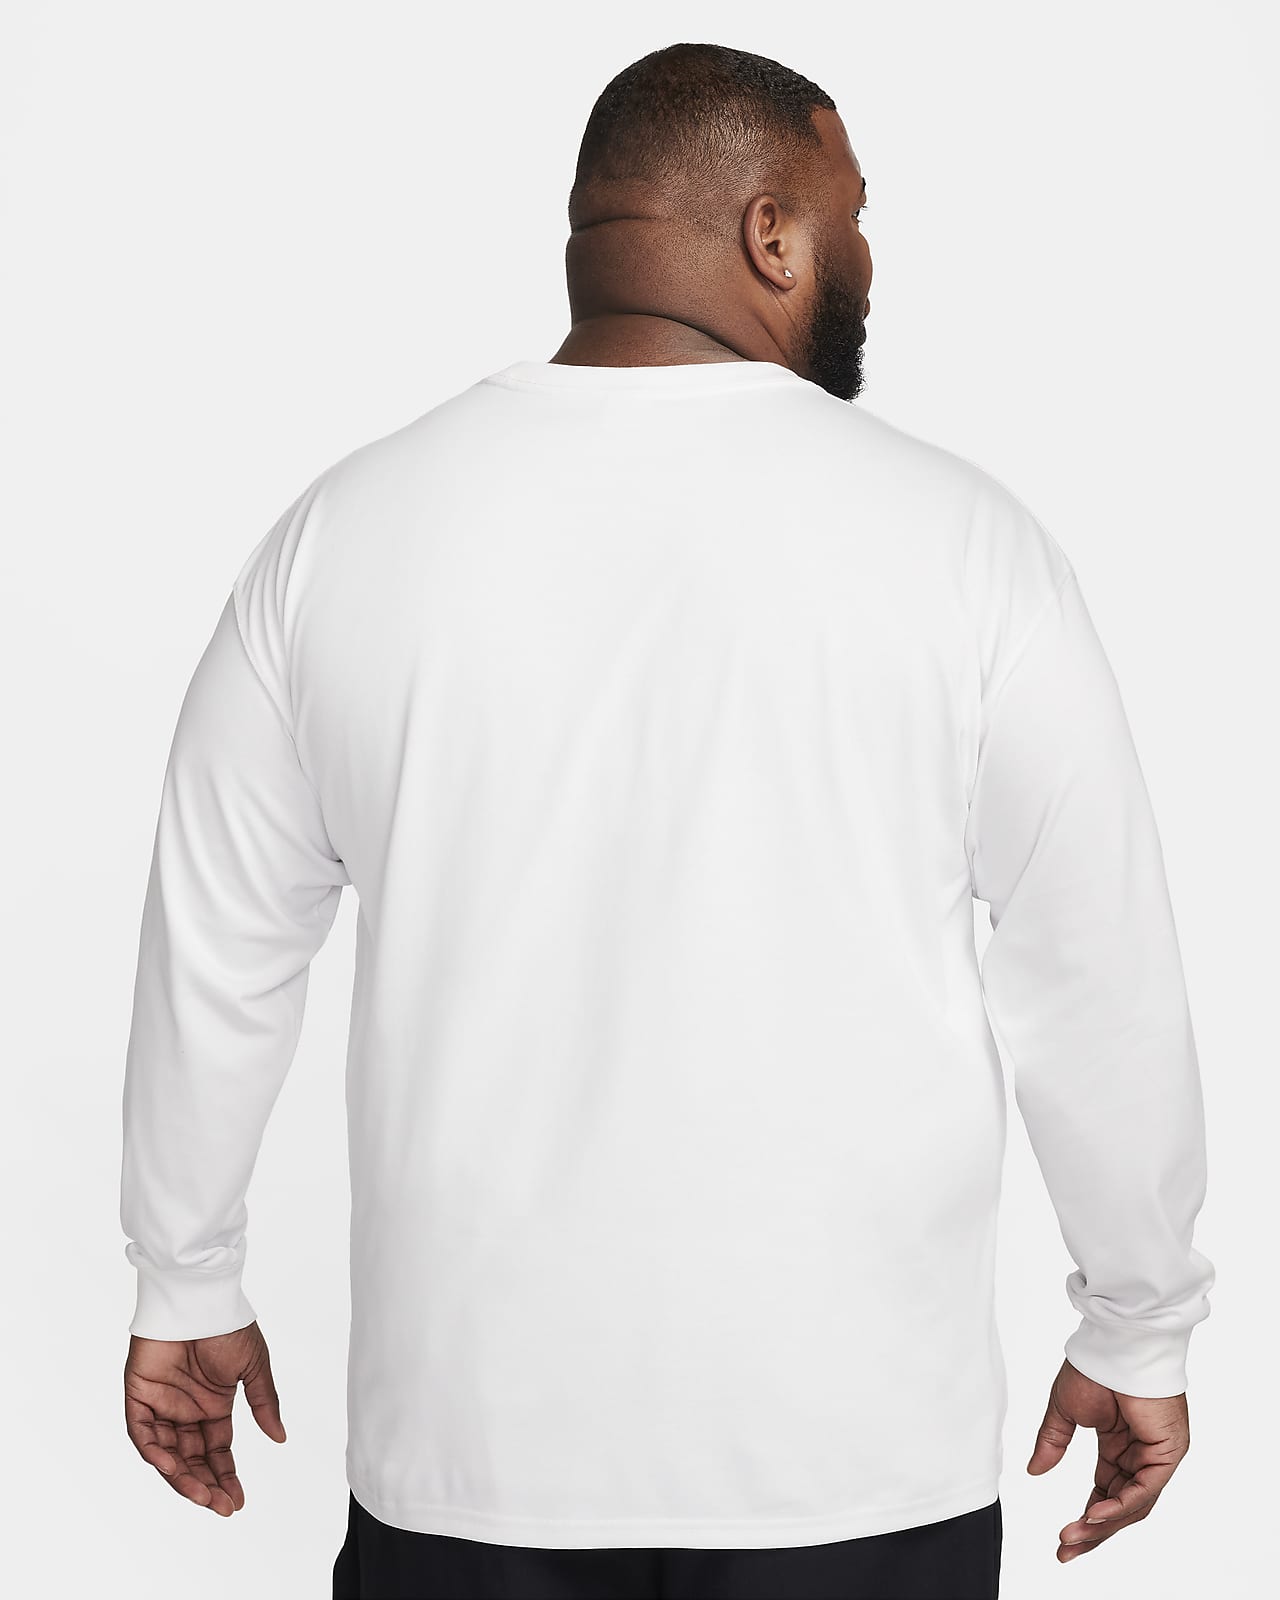 Nike ACG 'Lungs' Men's Long-Sleeve T-Shirt. Nike LU